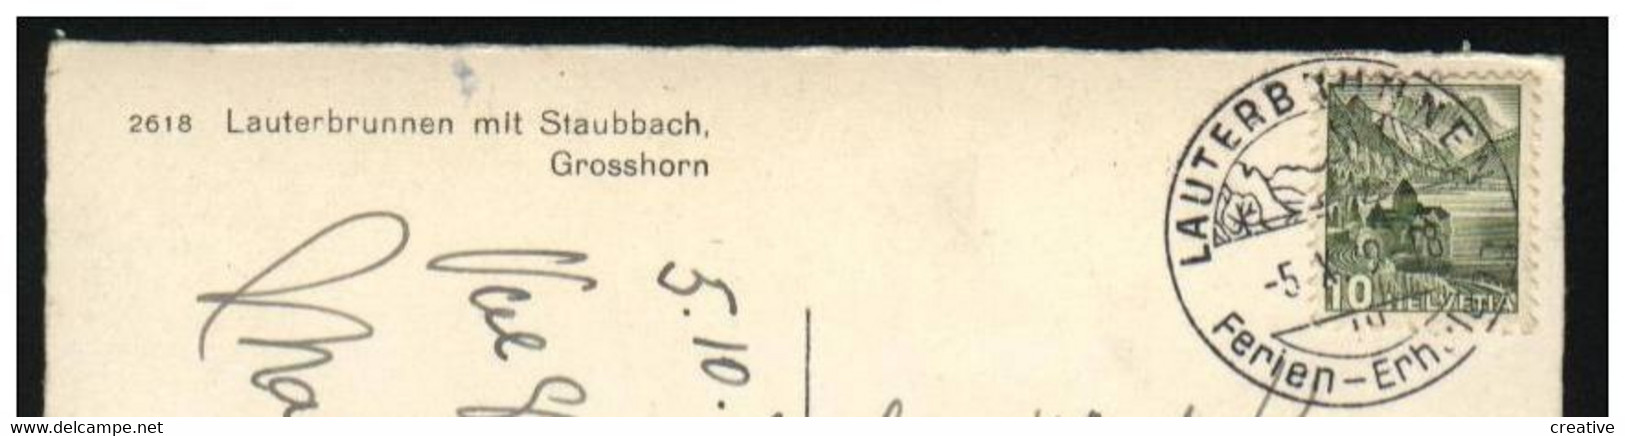 LAUTERBRUNNEN MIT STAUBBACH GROSSHORN+briefmarke1949 - Lauterbrunnen